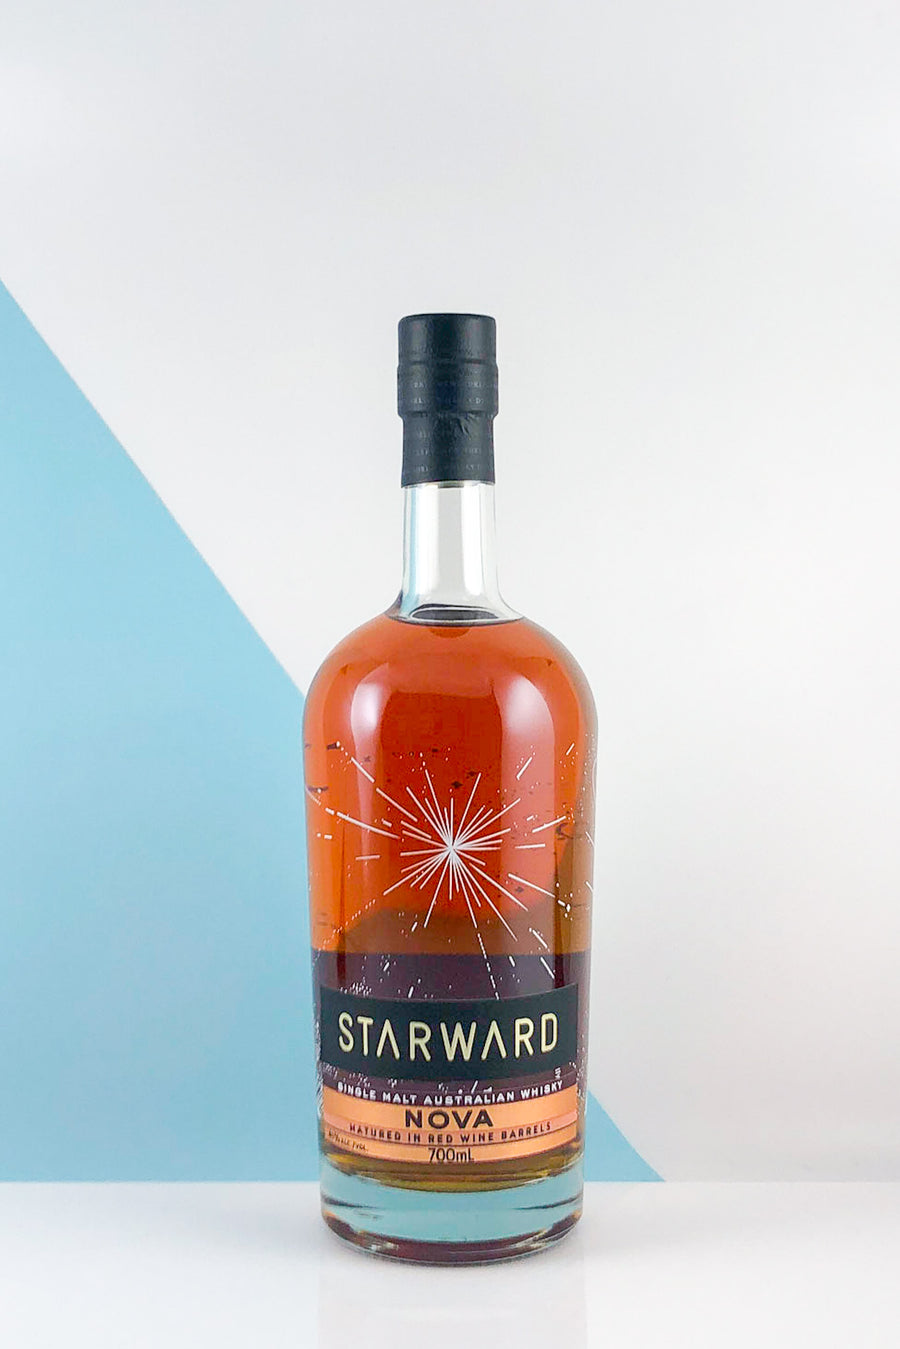 Starward Nova Single Malt Whisky